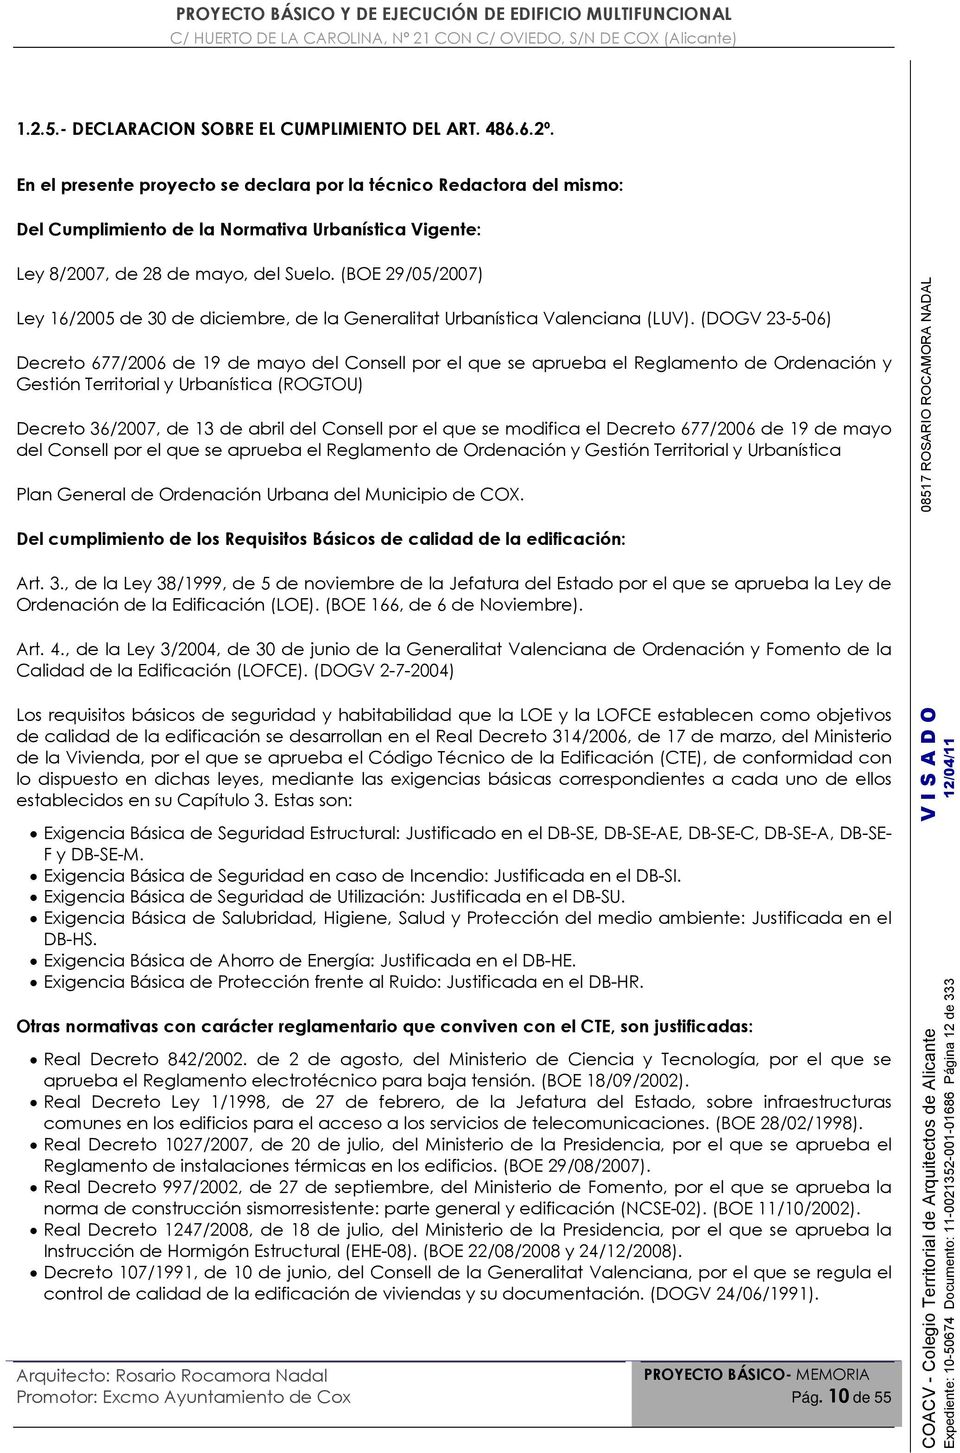 (BOE 29/05/2007) Ley 16/2005 de 30 de diciembre, de la Generalitat Urbanística Valenciana (LUV).